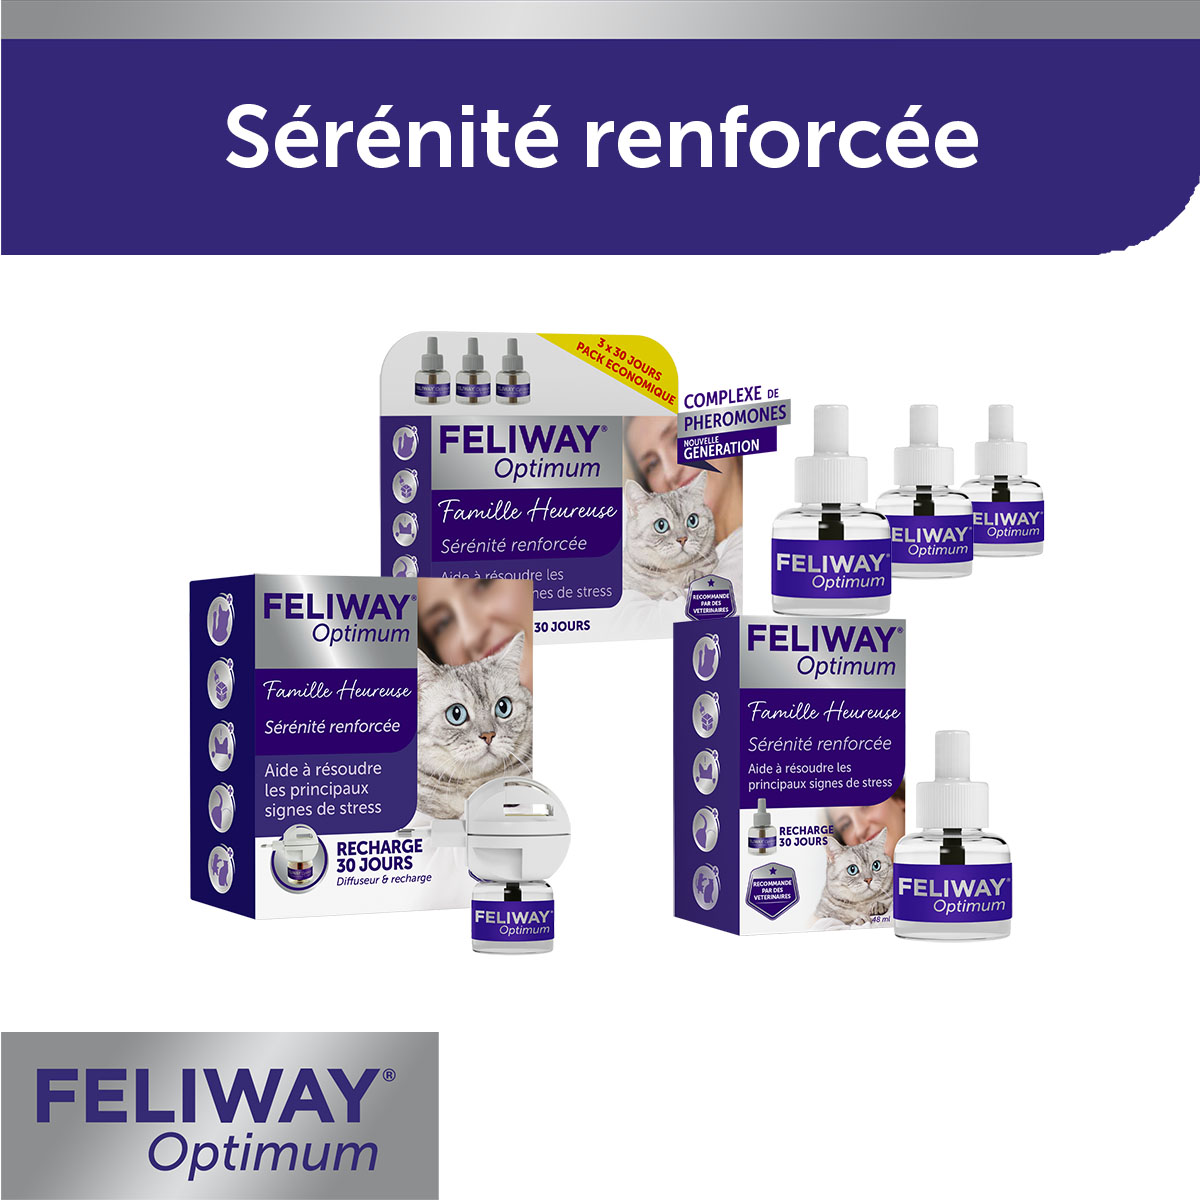 Animalerie pour chat : Feliway Optimum - Diffuseur et Recharge 1 mo